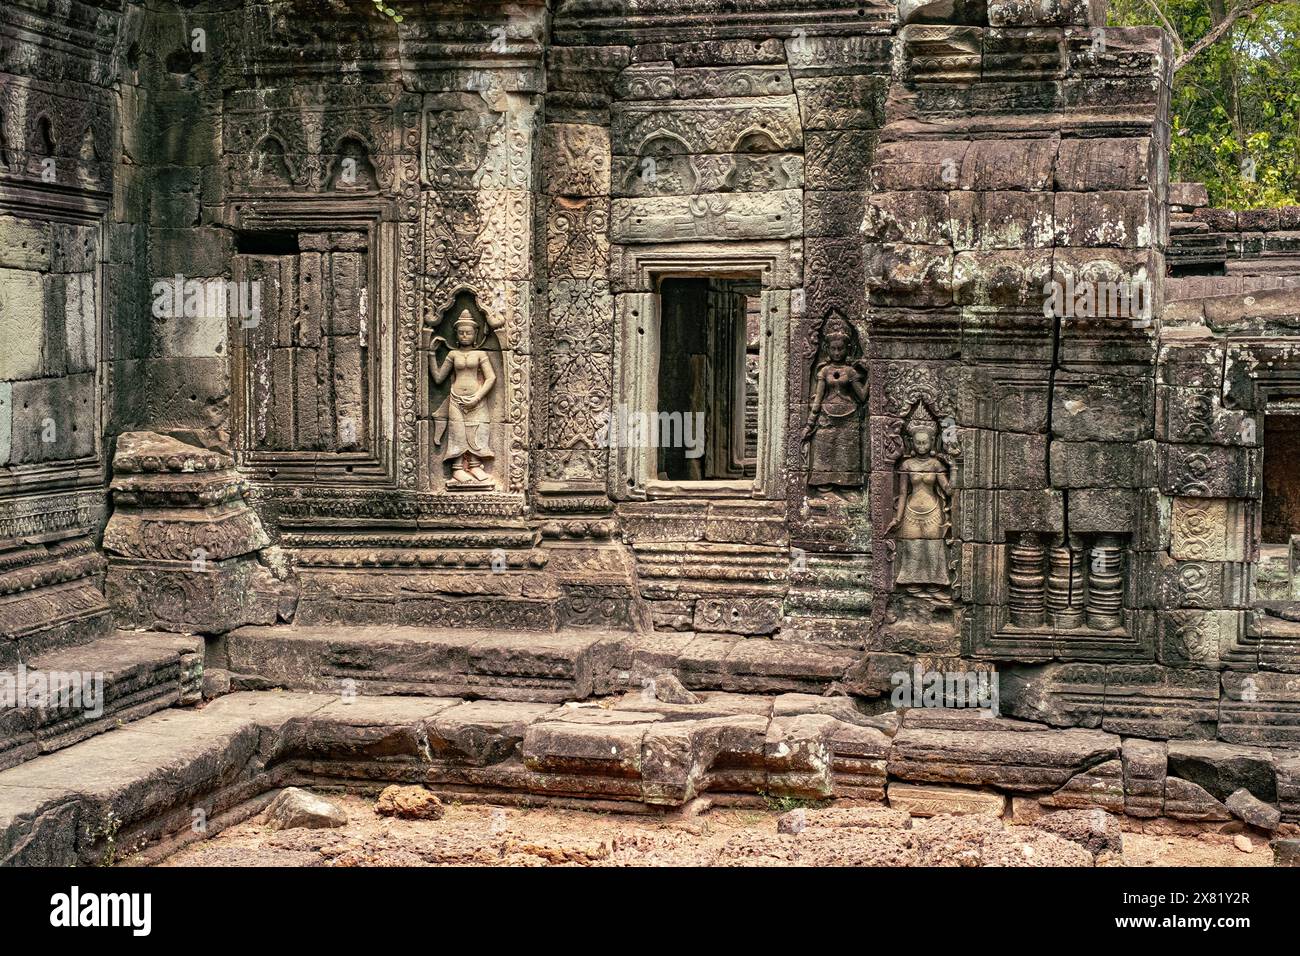 Mur de pierre d'Angkor Thom, l'un des nombreux sites d'Angkor Vat site du patrimoine mondial de l'UNESCO, Siem Reap, Cambodge Banque D'Images